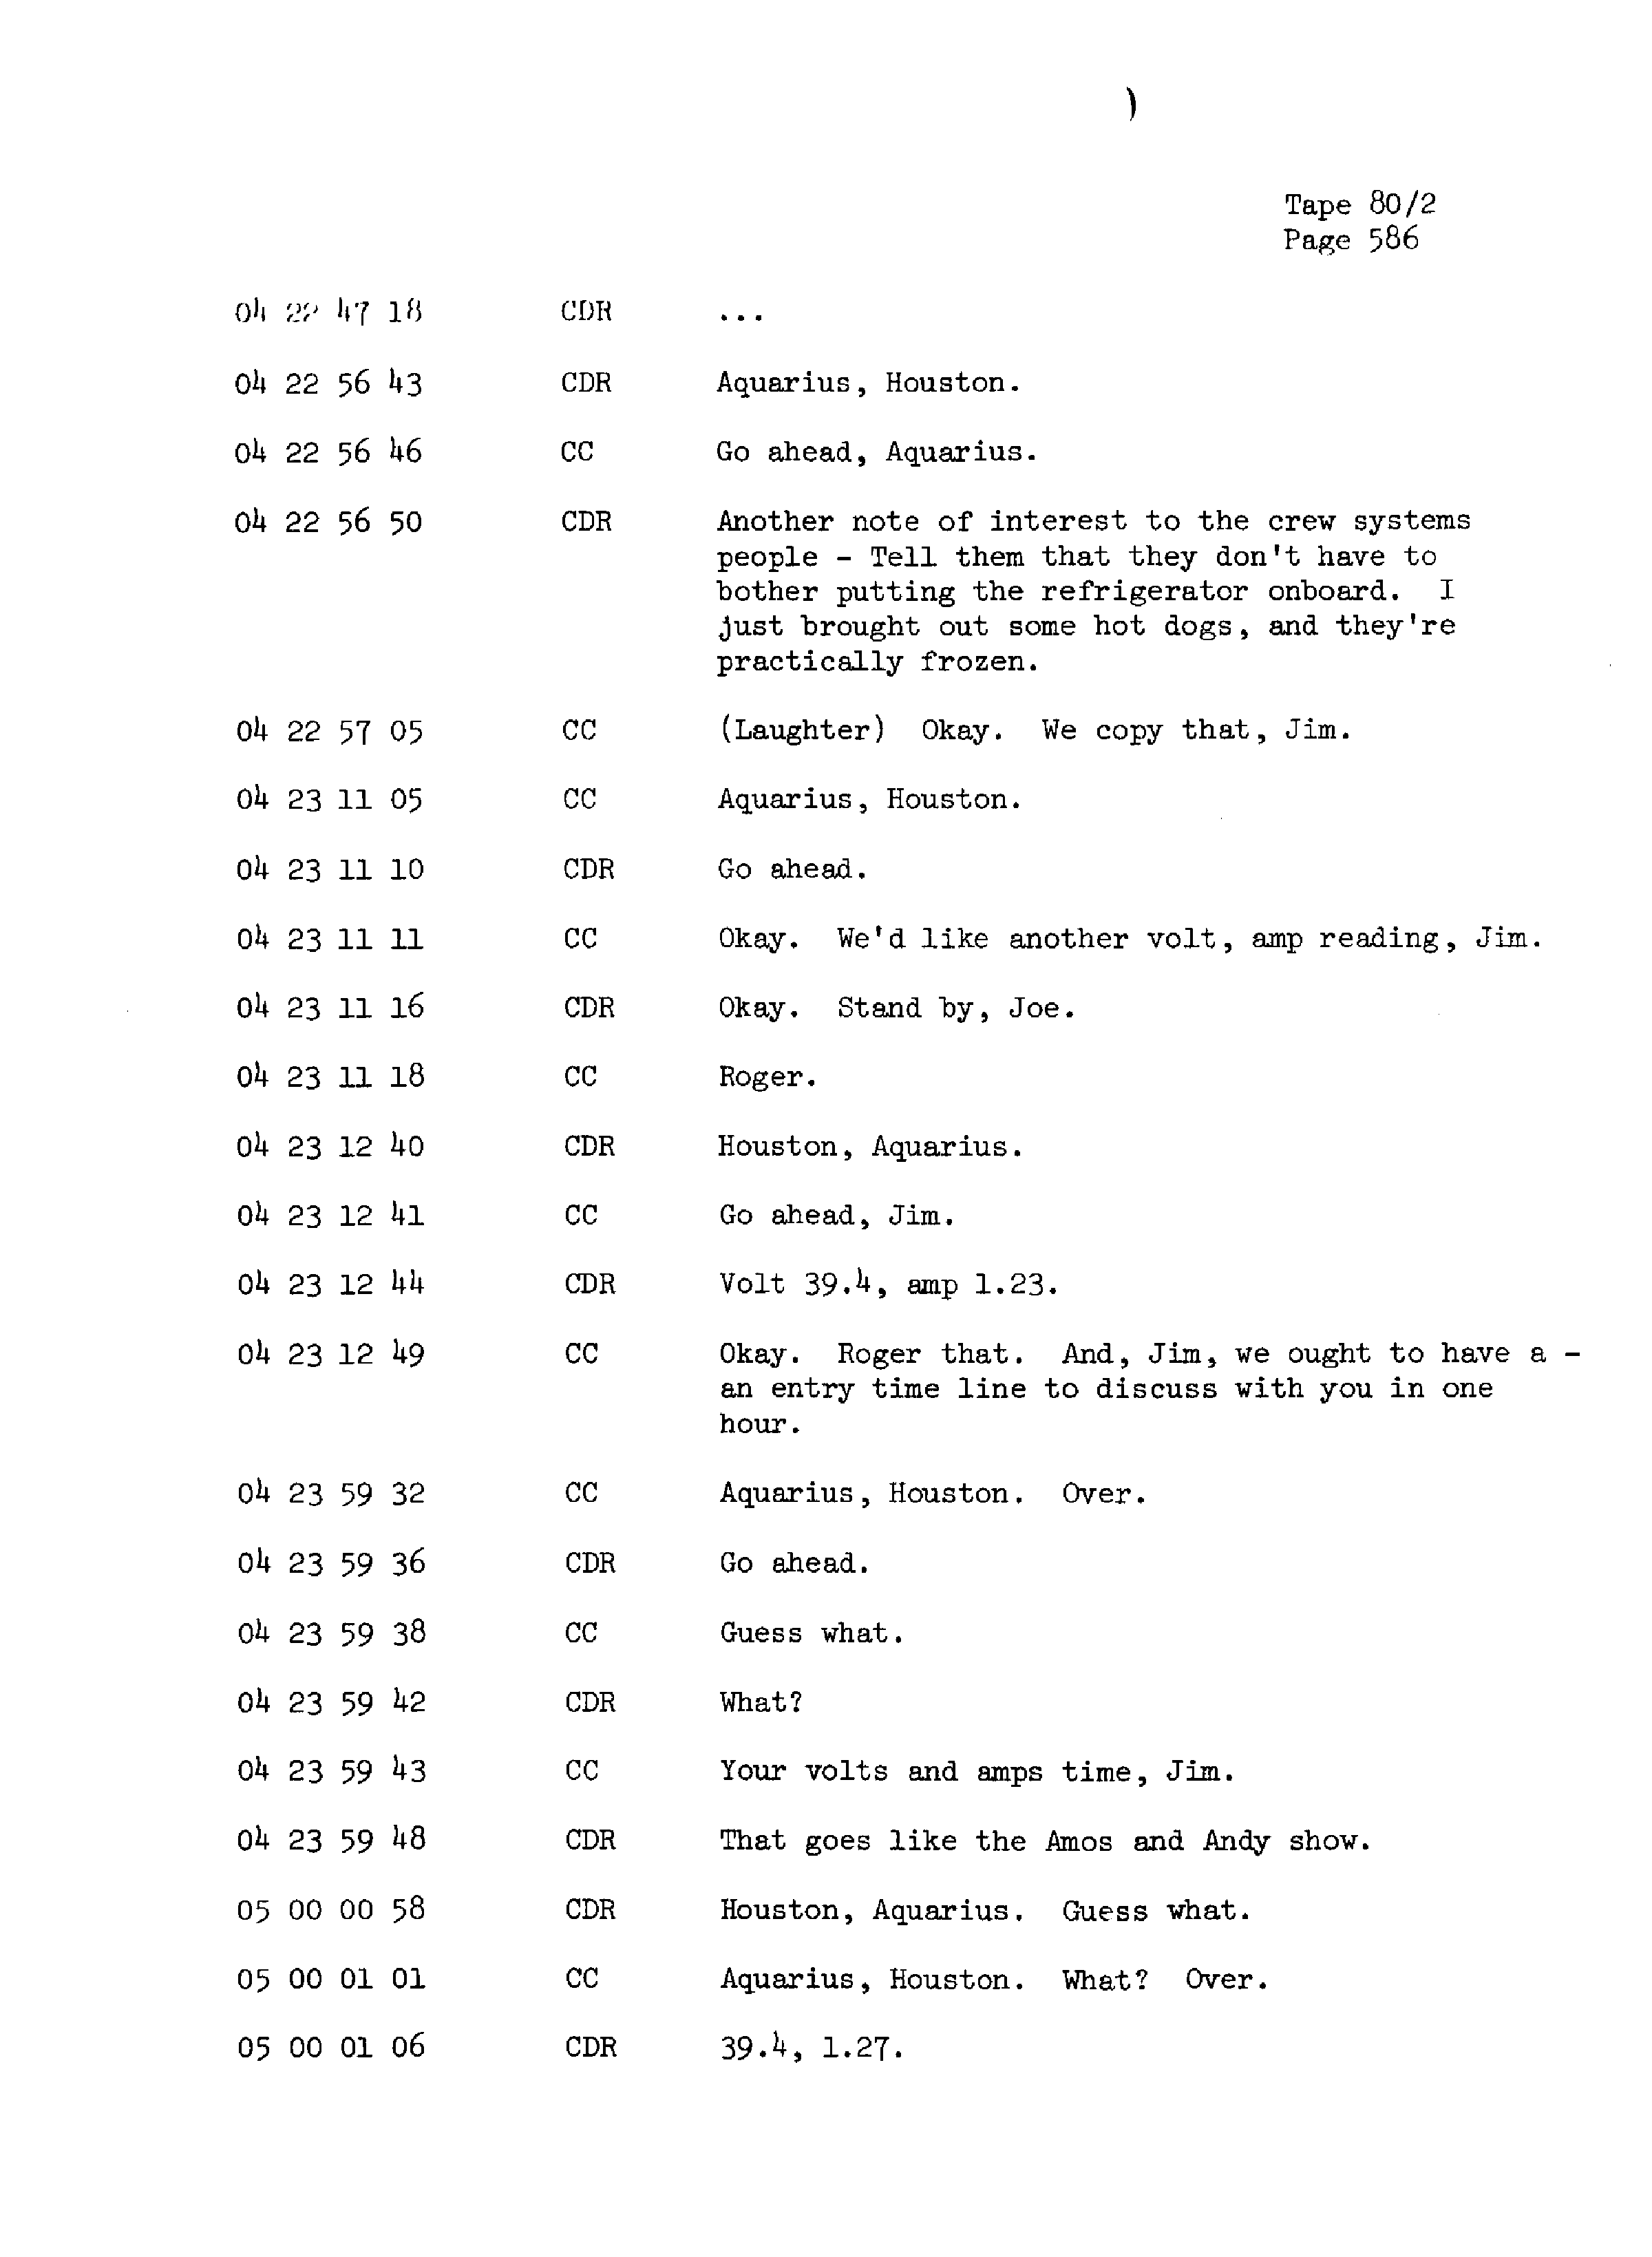 Page 593 of Apollo 13’s original transcript